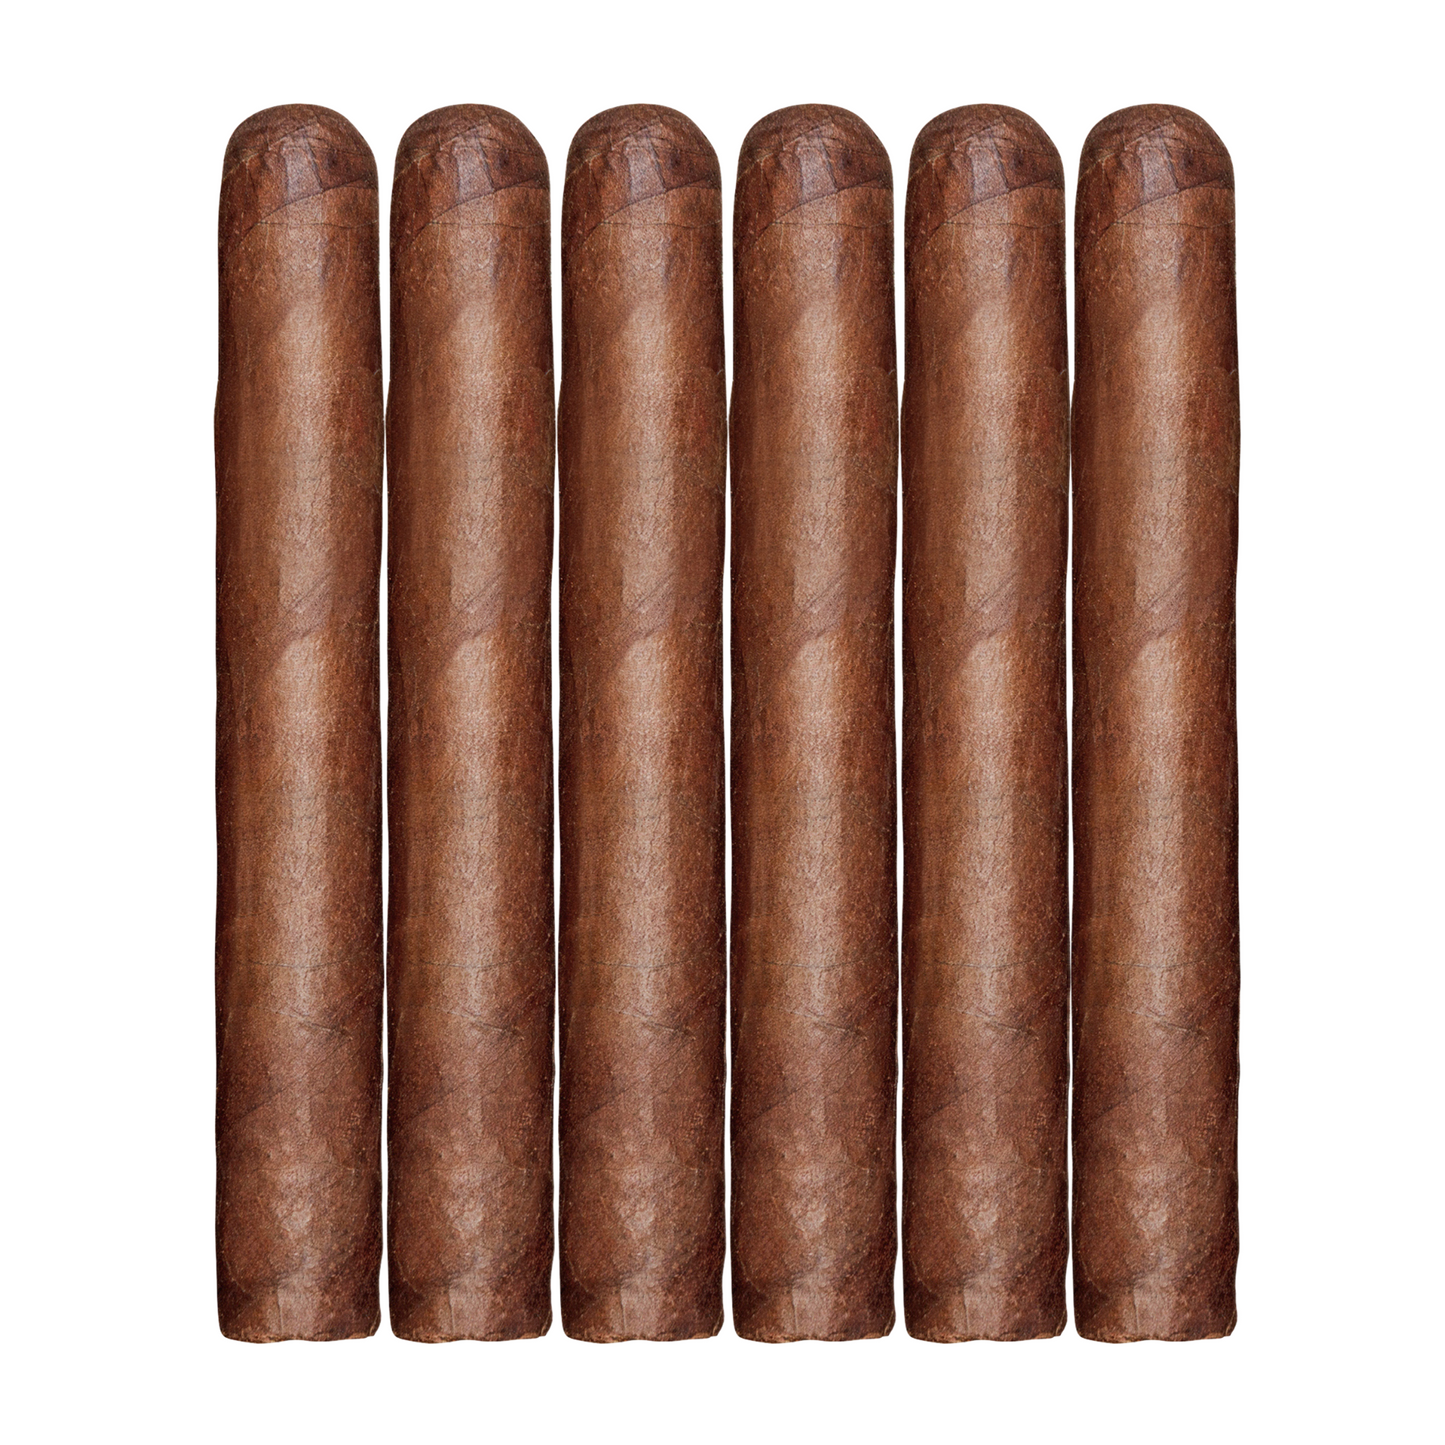 Caputo Cigars SAMPLER 6-Pack